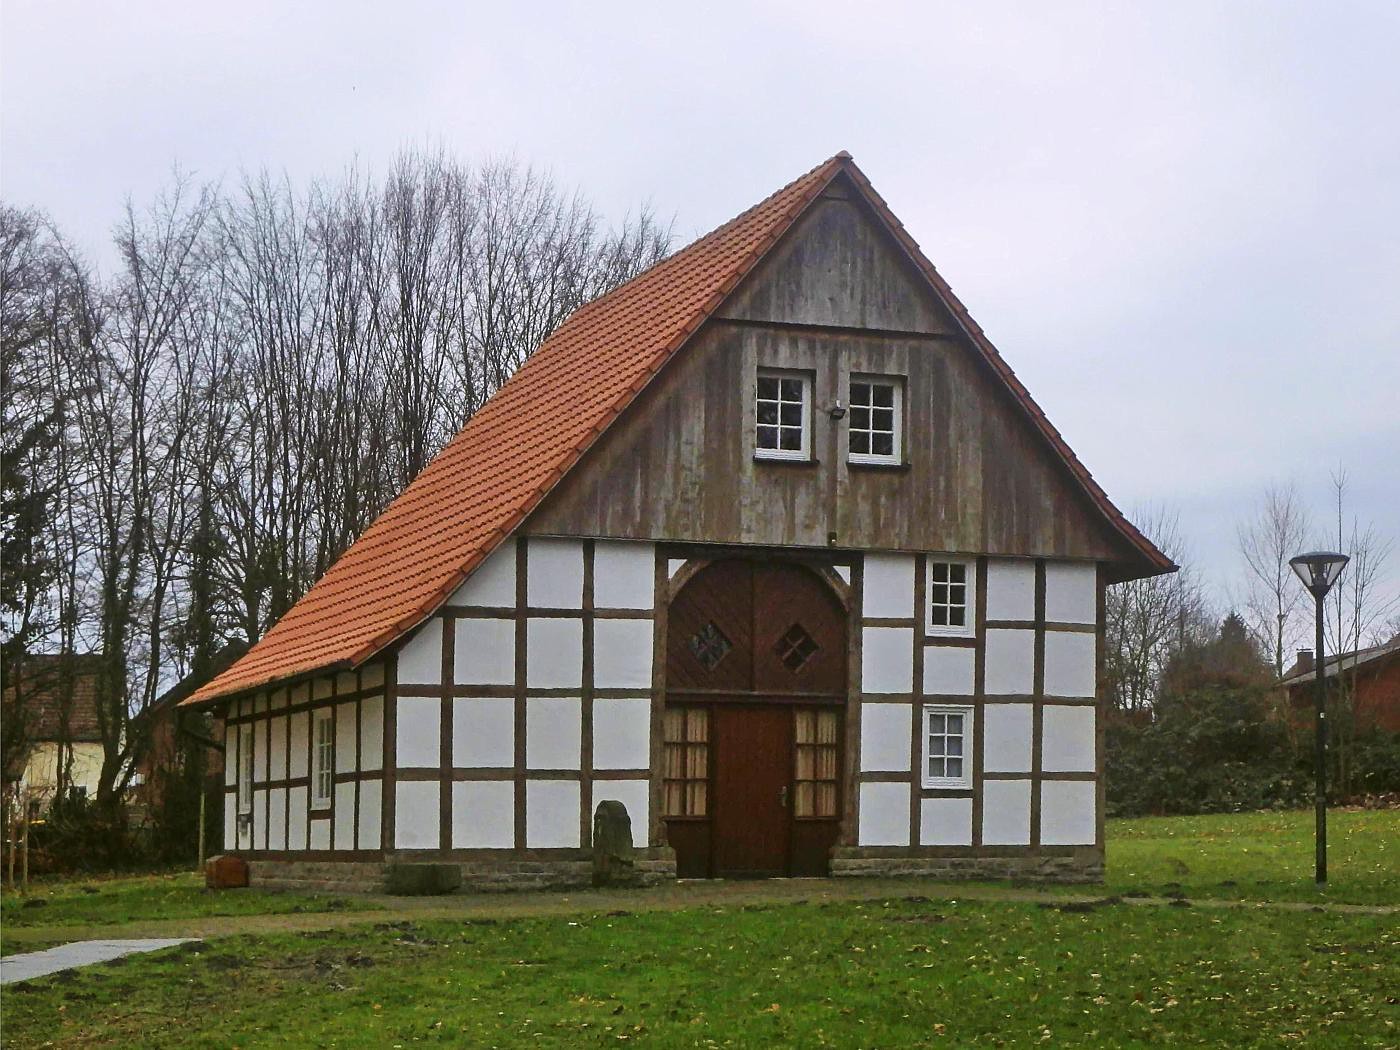 Heimathaus Stukenbrock